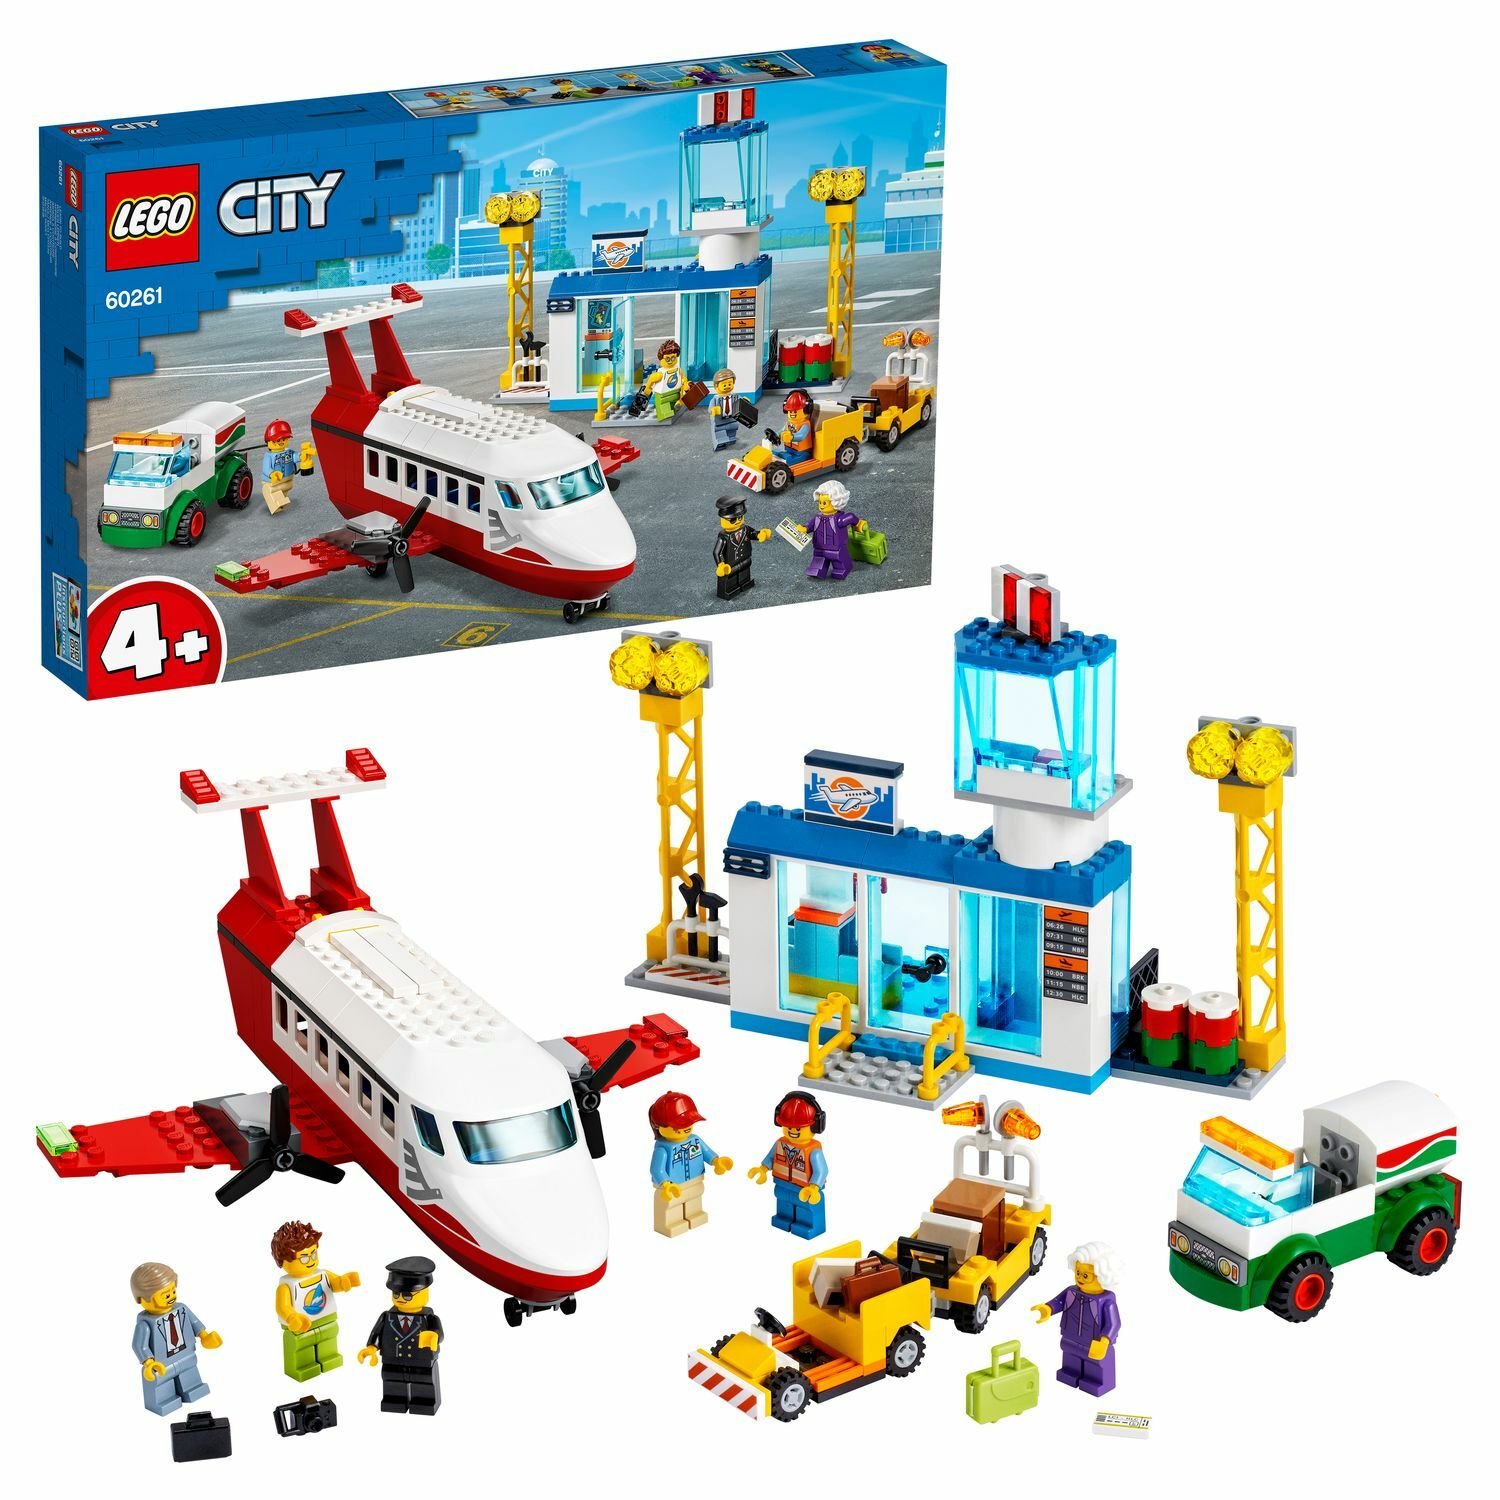 LEGO City 60261 Airport Городской аэропорт - Орск 